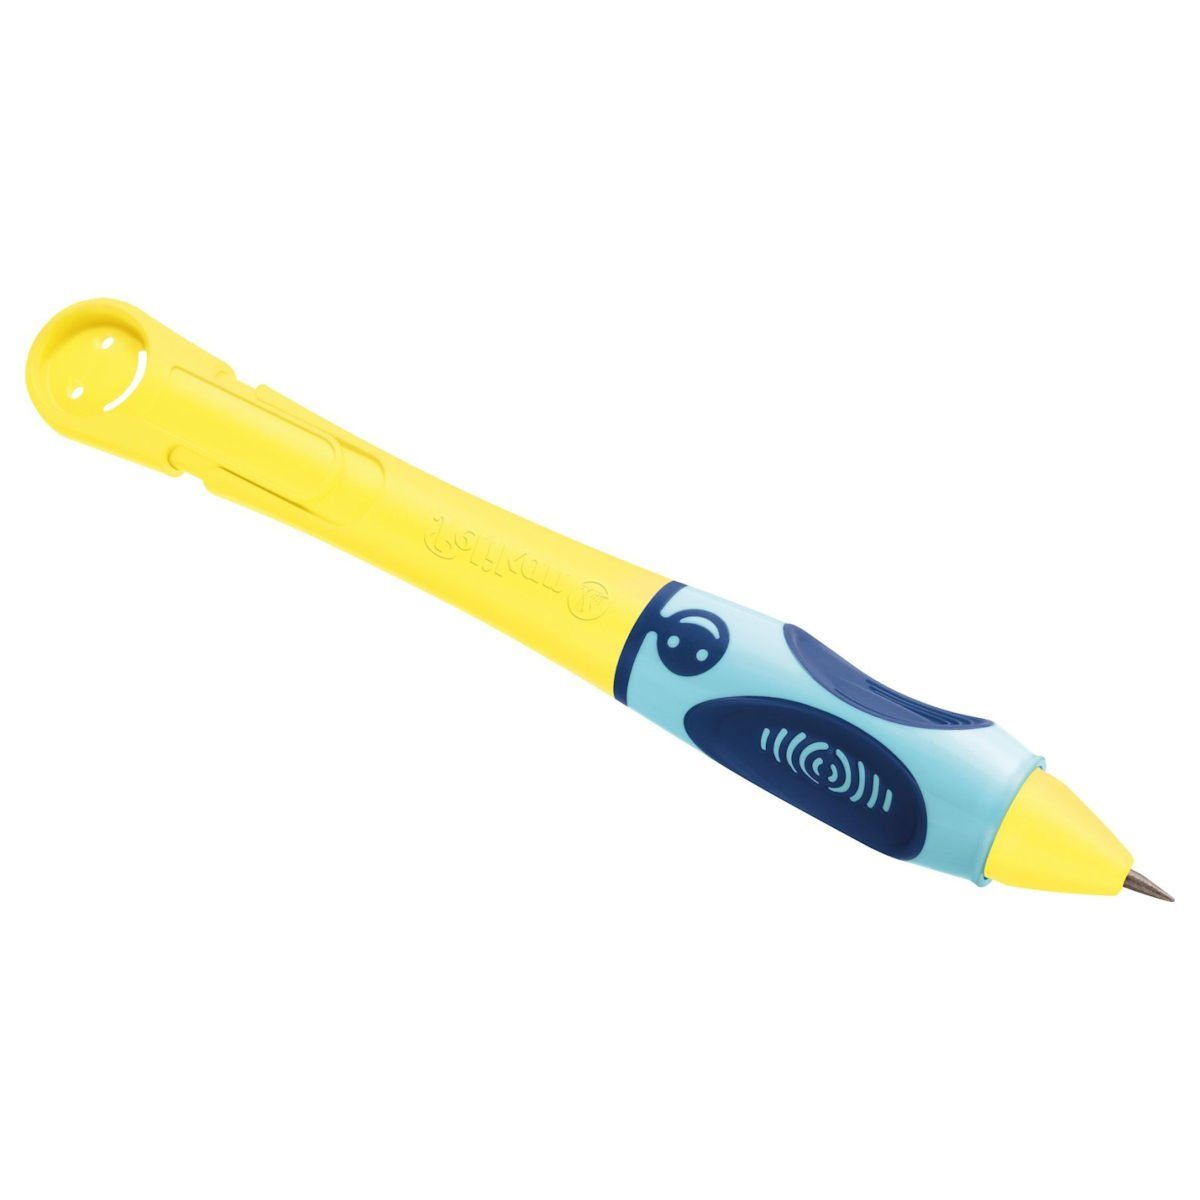 Druckbleistift Pelikan für Linkshänder griffix® sunlight Schreiblernstift